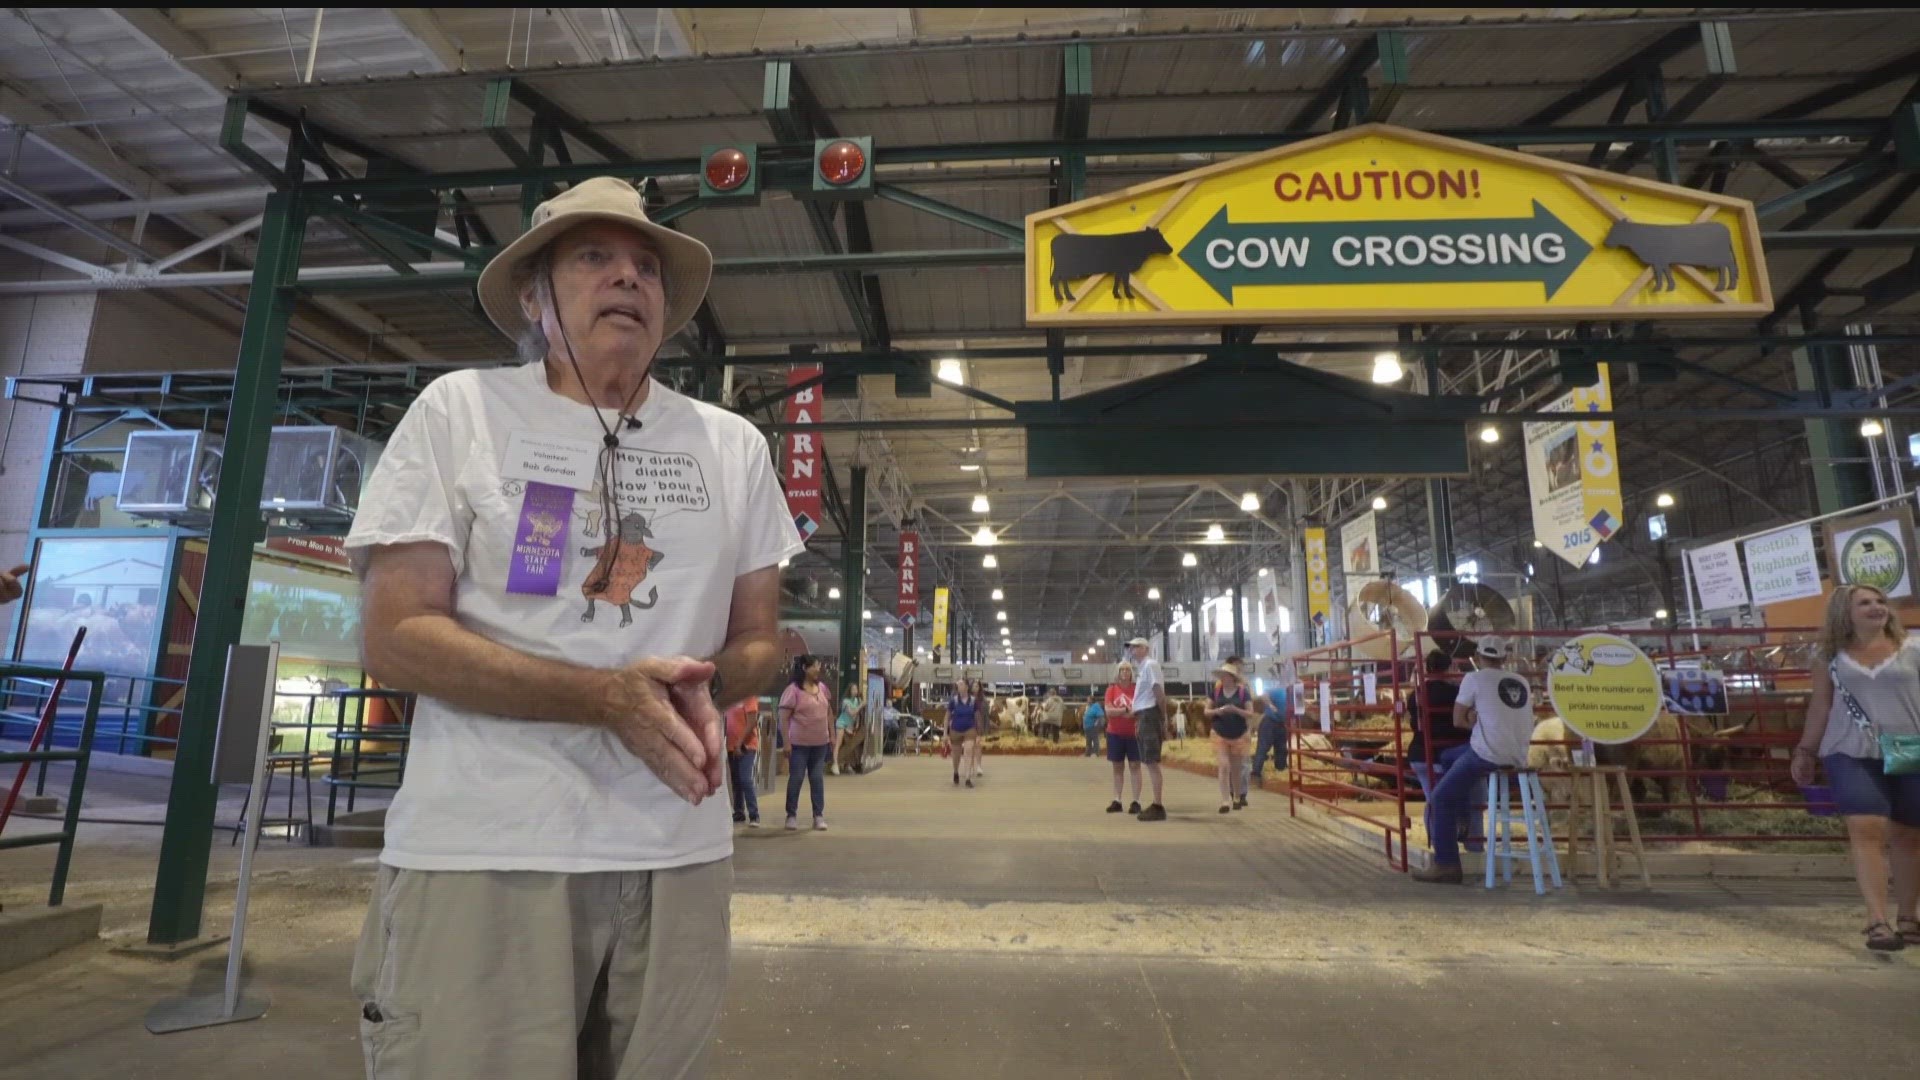 A retired software developer turned volunteer, Bob Gordon, tells cow jokes at the Minnesota State Fair's cattle barn.